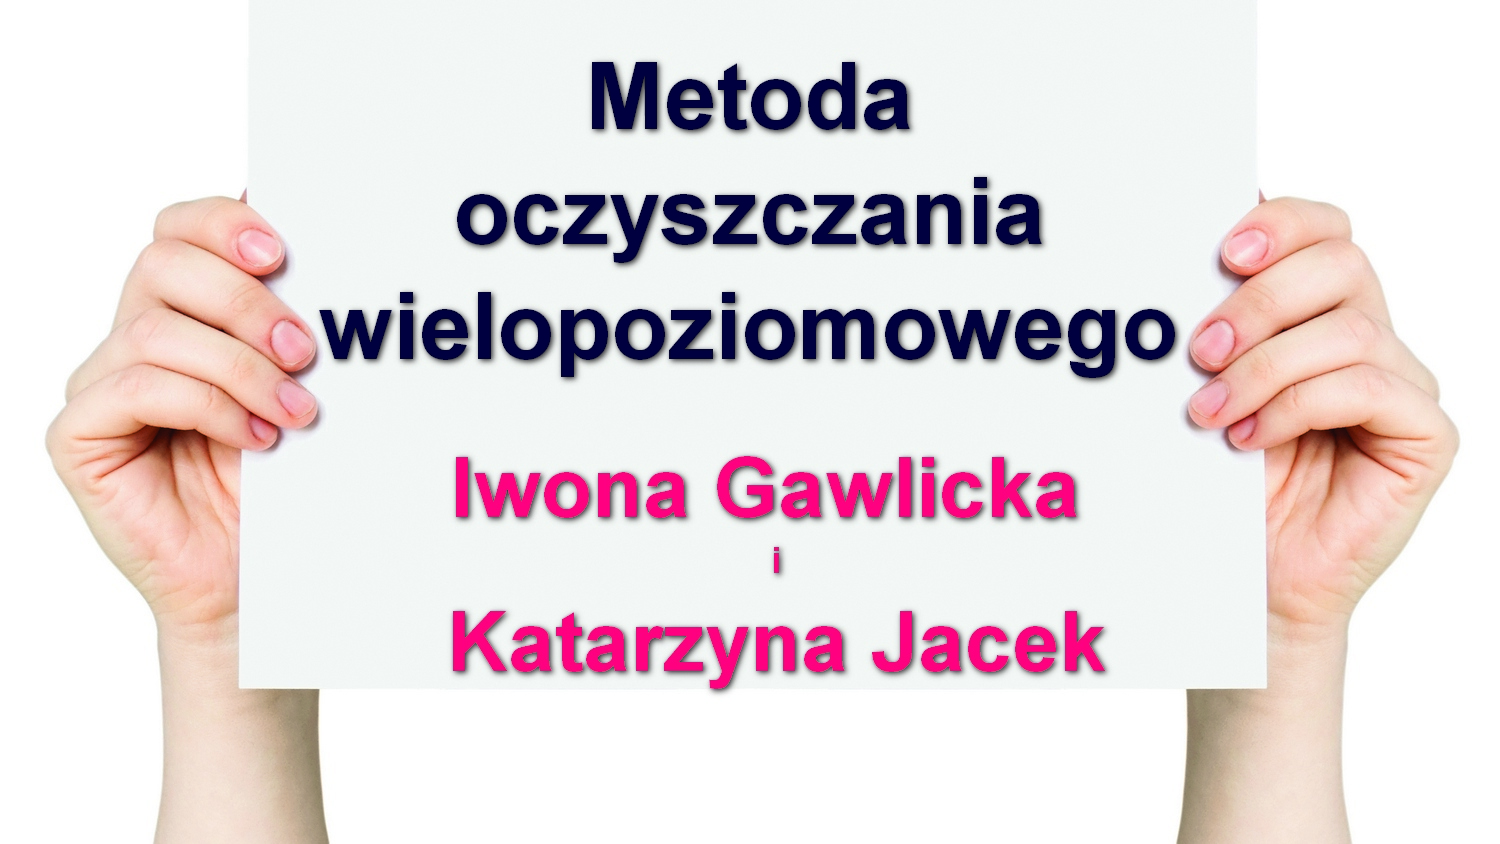 Metoda oczyszczania wielopoziomowego – Iwona Gawlicka i Katarzyna Jacek